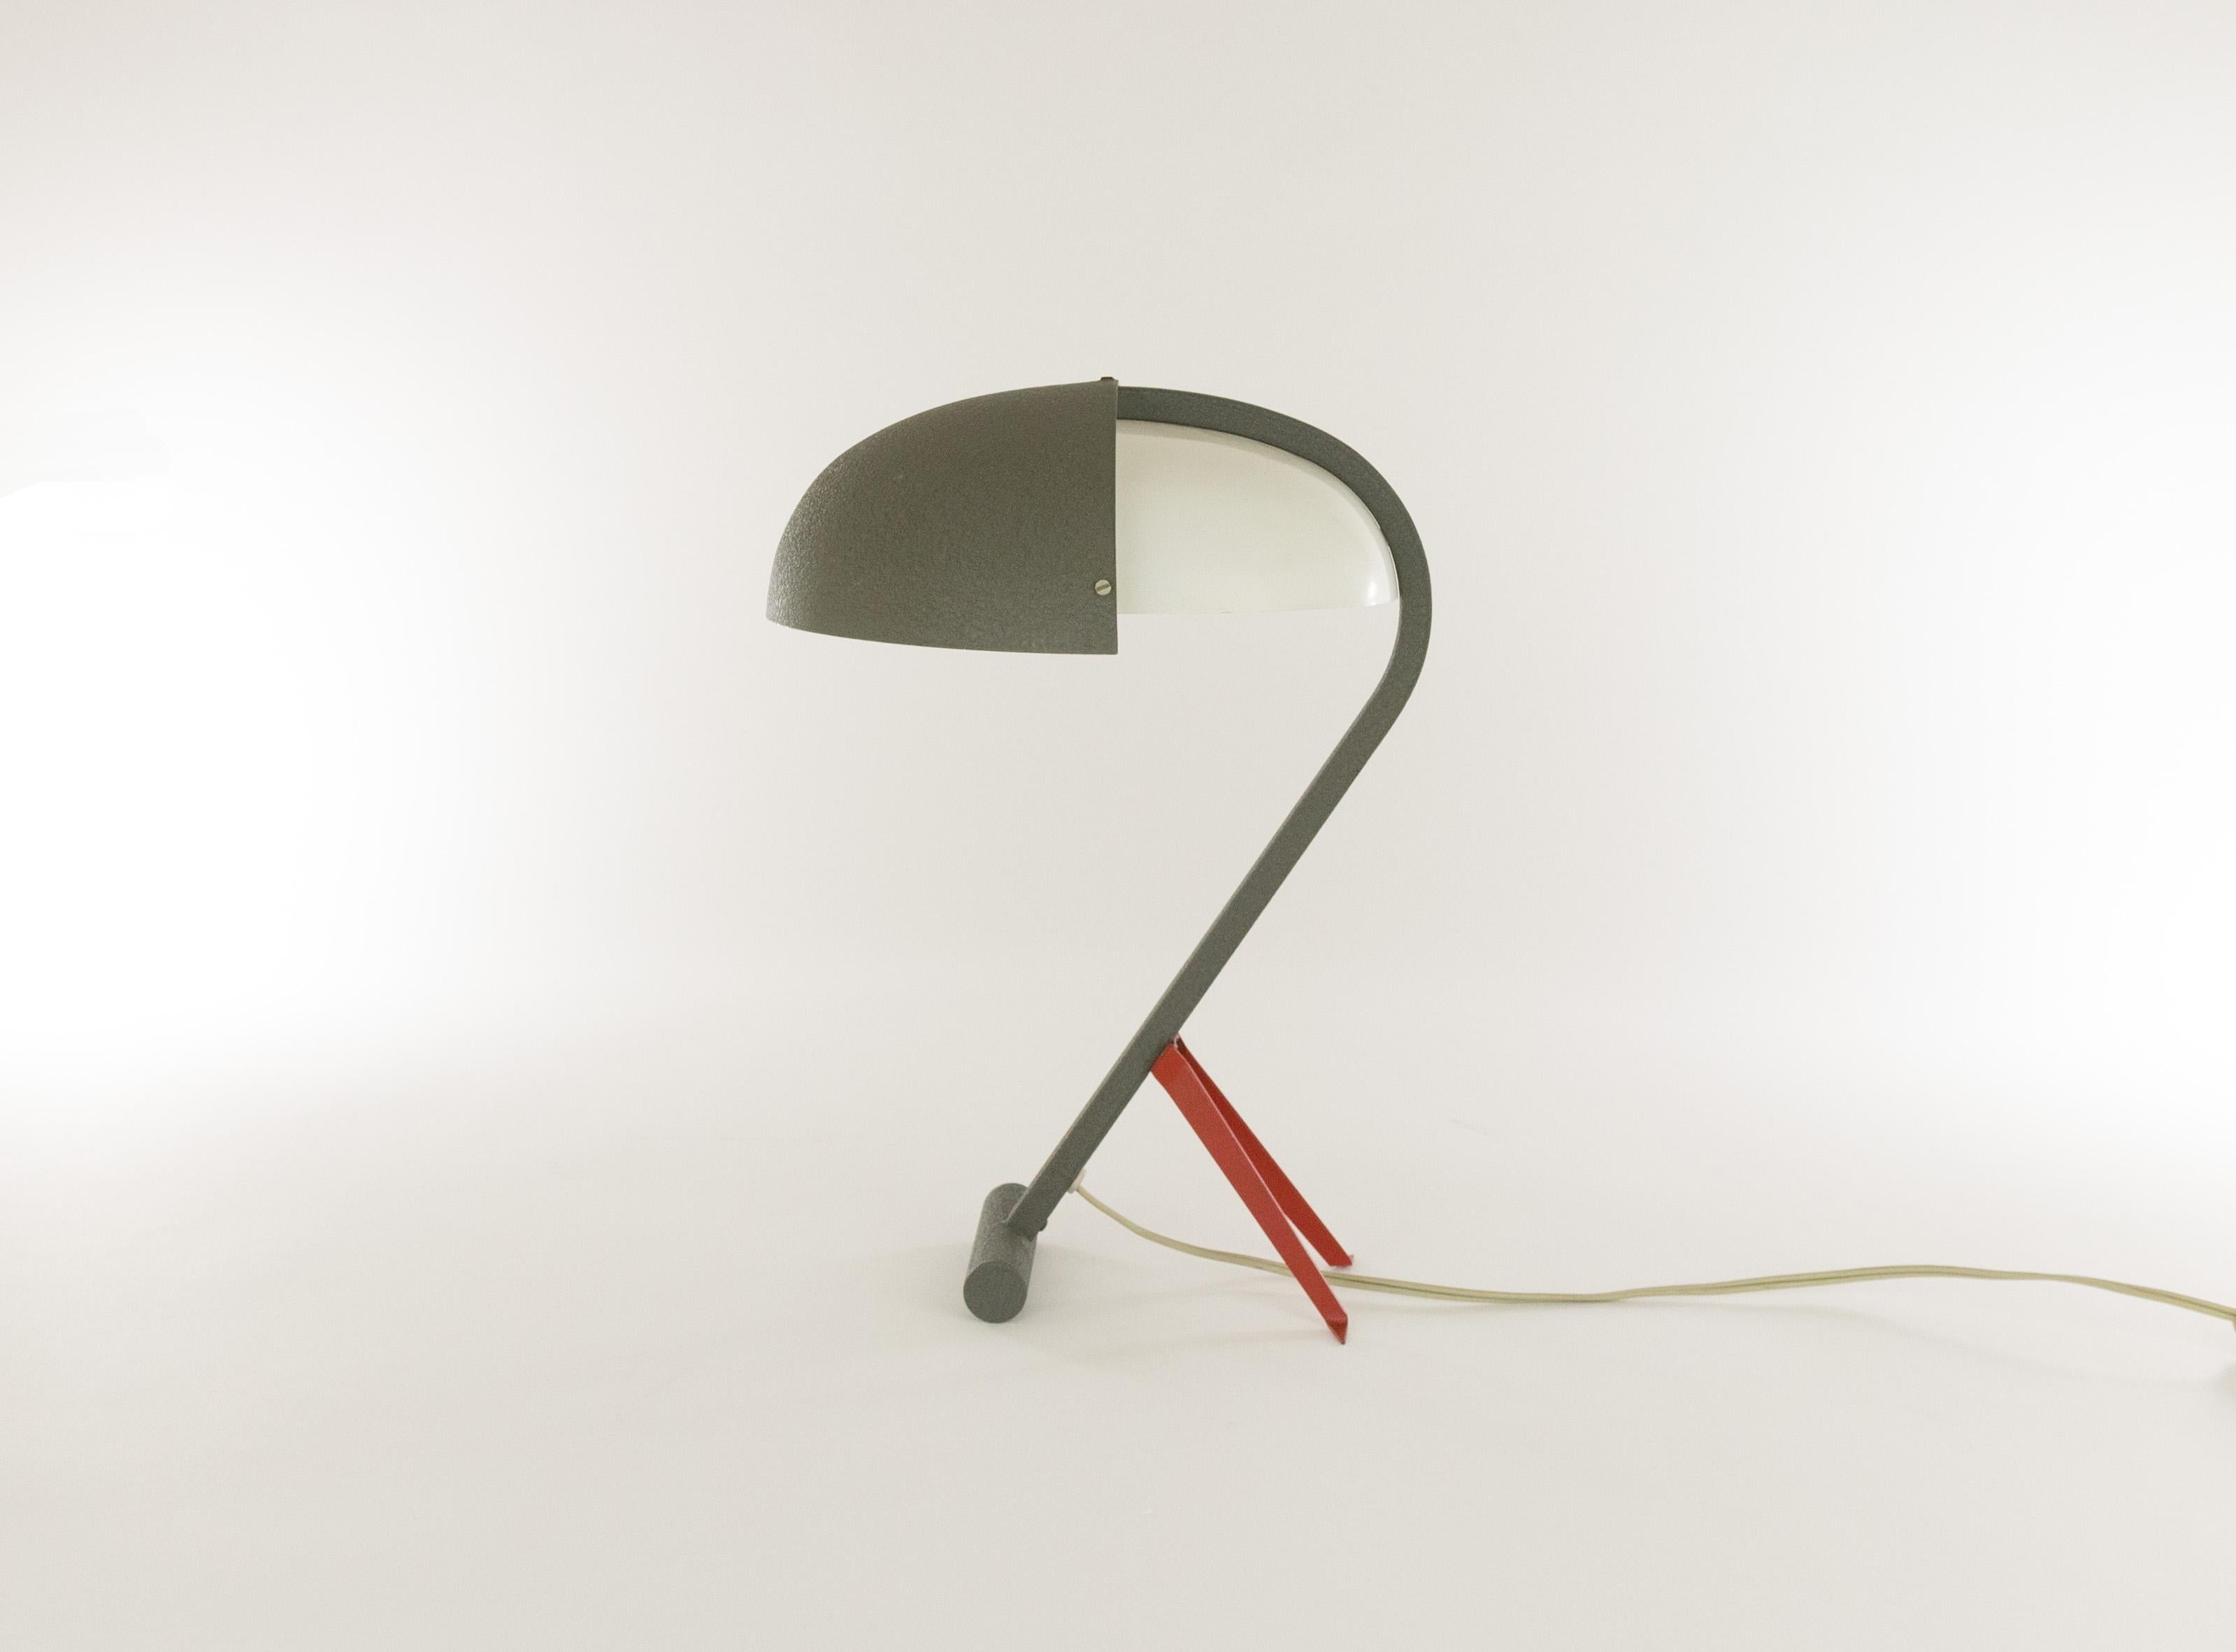 Seltene Tischleuchte, Modell NX 110, entworfen von Louis Christiaan Kalff für Philips Eindhoven.

Das Gestell ist aus grauem Stahl, der Schirm ist aus demselben Material und weiß lackiertem Metall gefertigt. Die kleinen roten Stützfüße verleihen